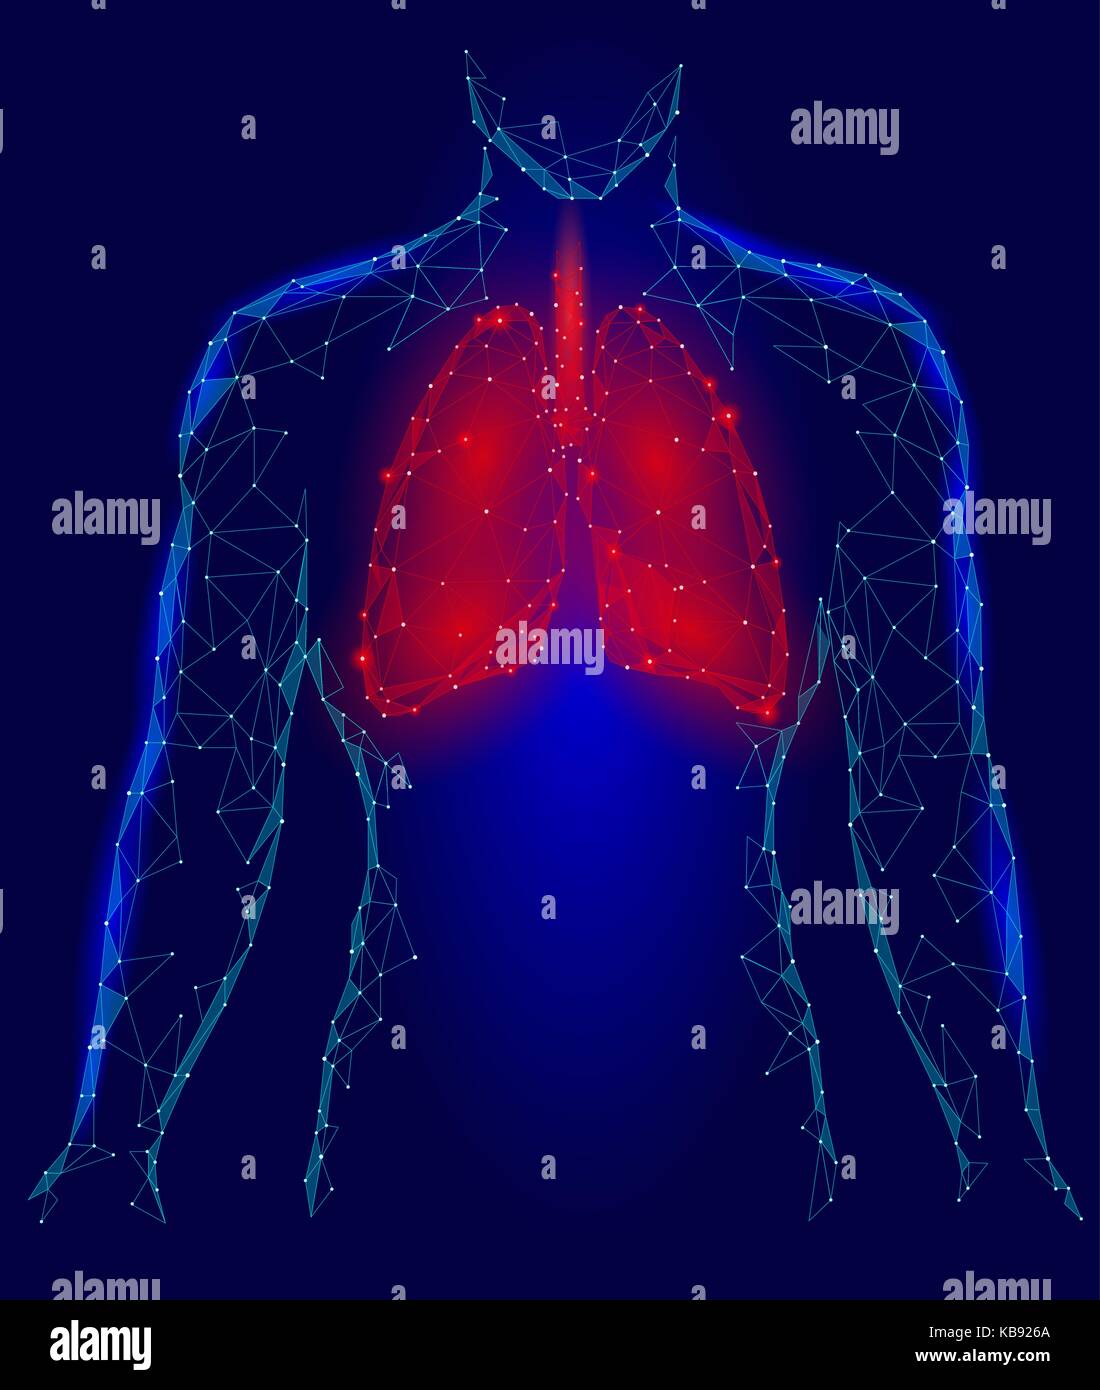 Menschliche Lungen pulmonale Infektion internen Organ. Atemwege im Körper Silhouette. Low Poly 3d angeschlossen Dots Dreieck polygonalen Design. Rot Blau Farbe Hintergrund Vector Illustration Stock Vektor